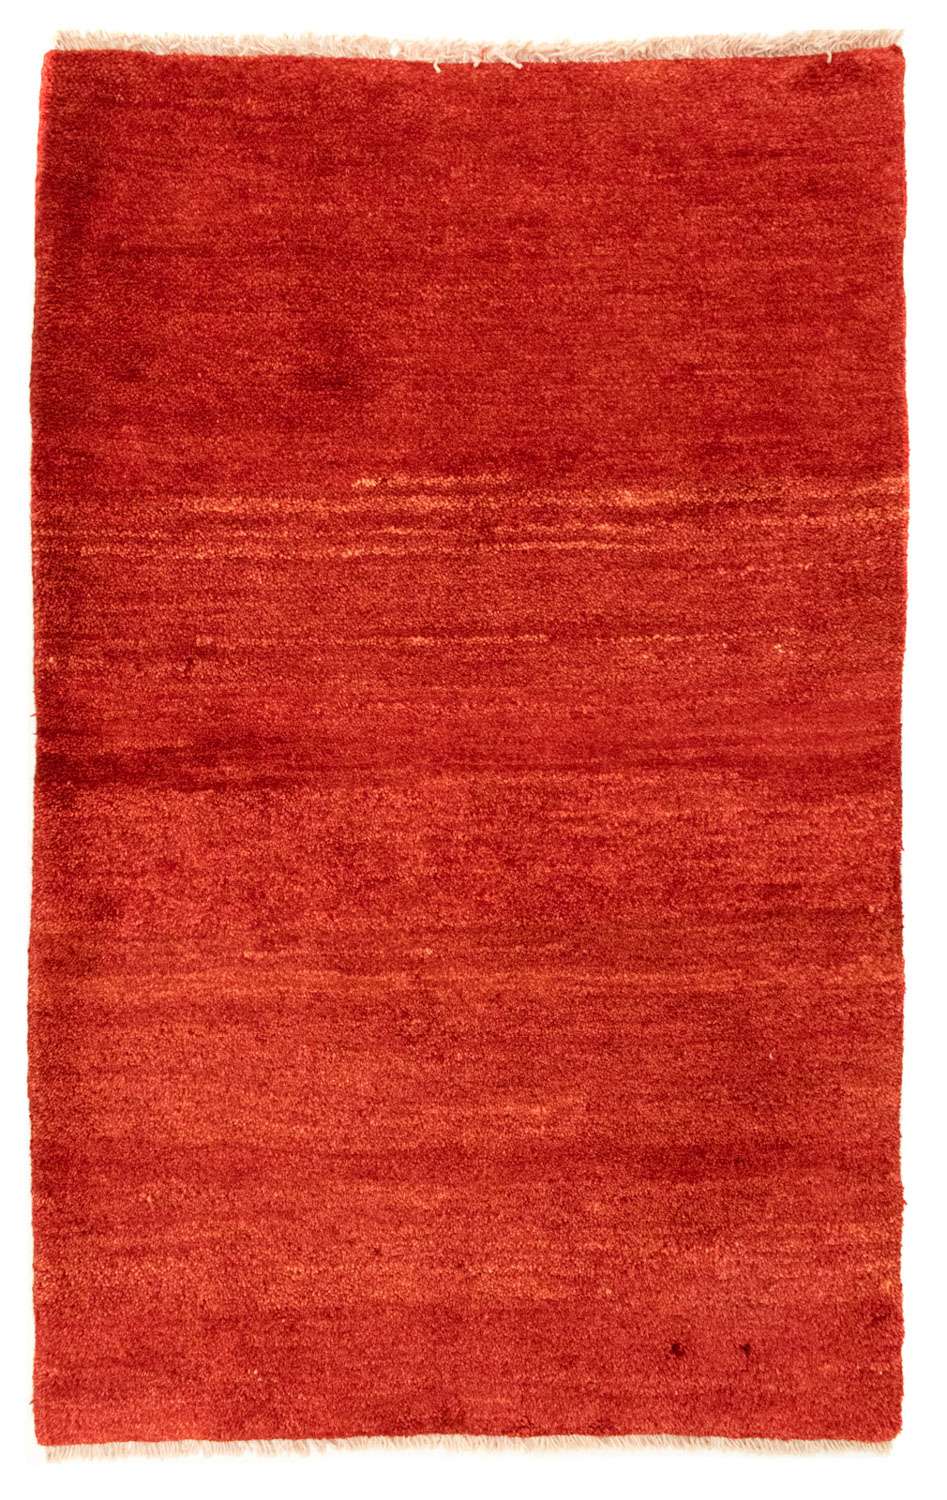 Dywan Gabbeh - perski - 125 x 76 cm - czerwony